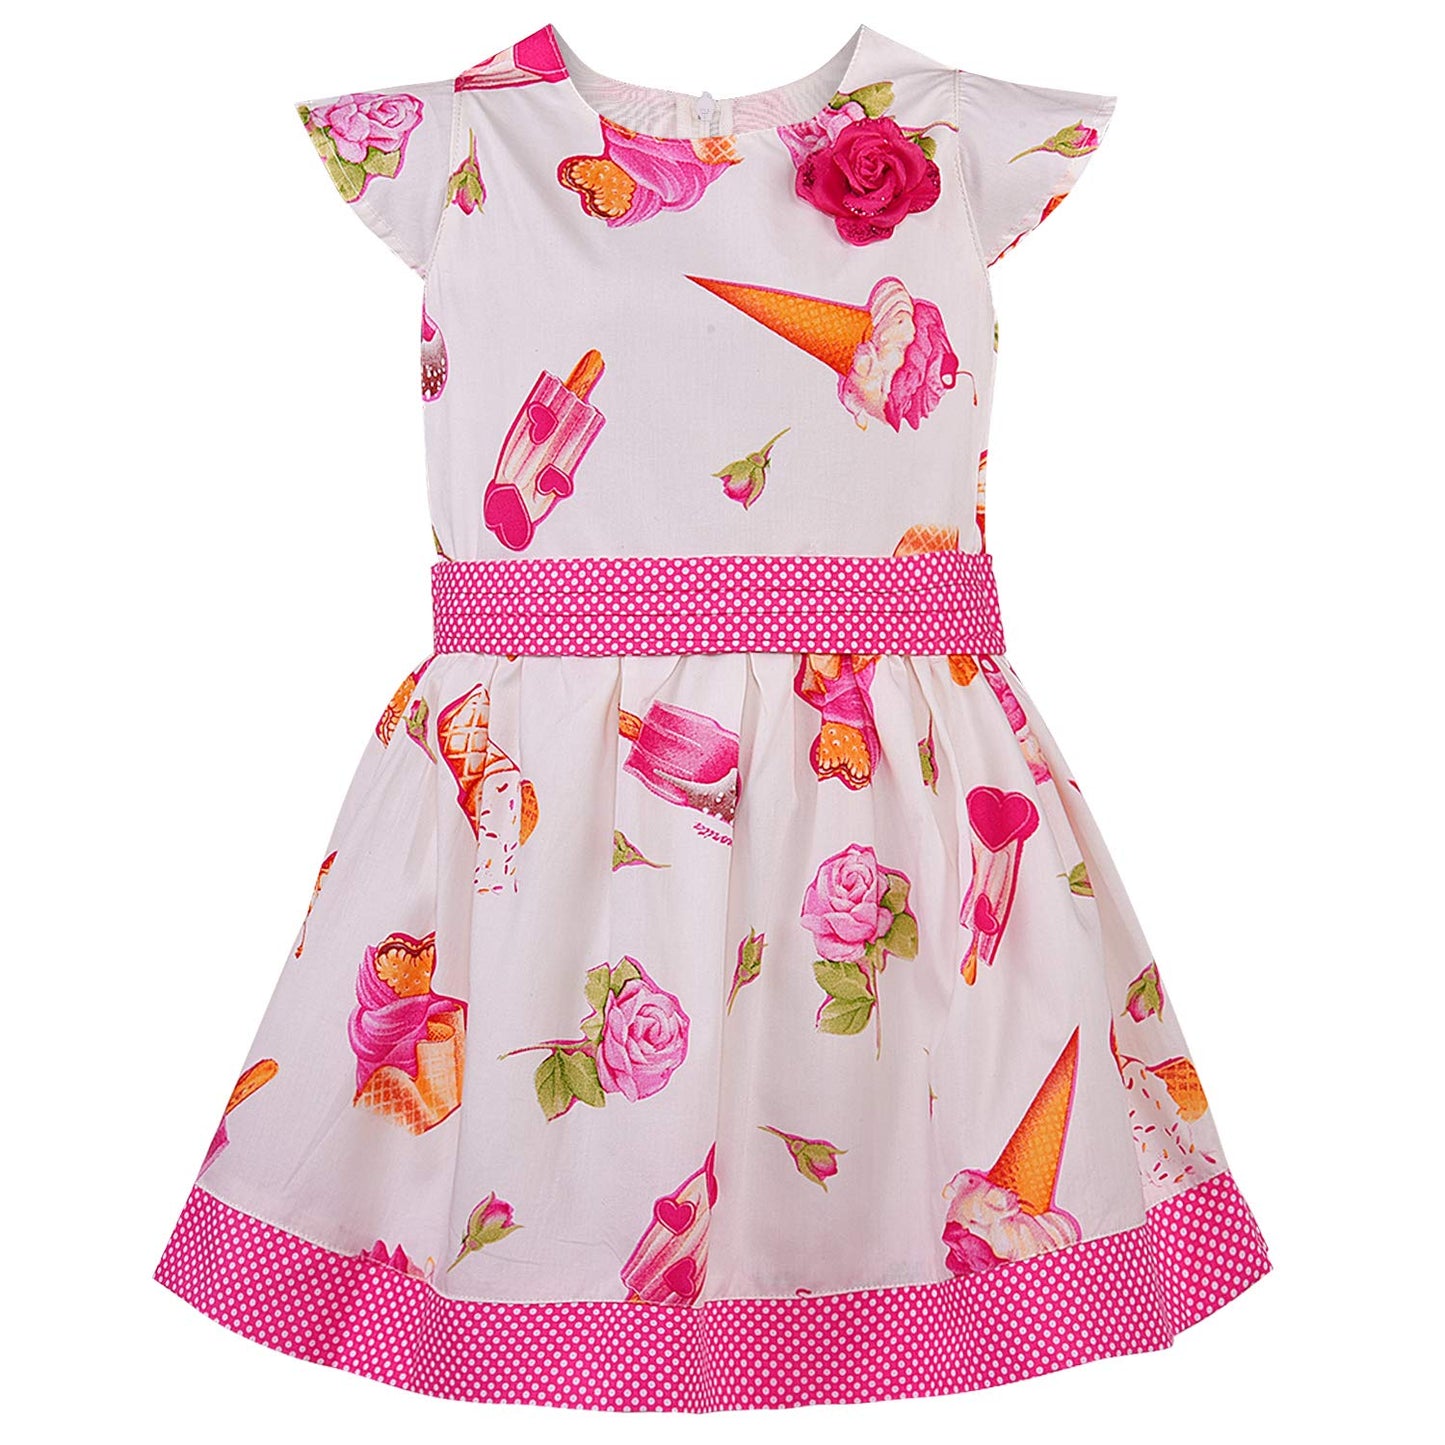 Baby Girls Dress Frock-bxa253pnk - Wish Karo Party Wear - frocks Party Wear - baby dress